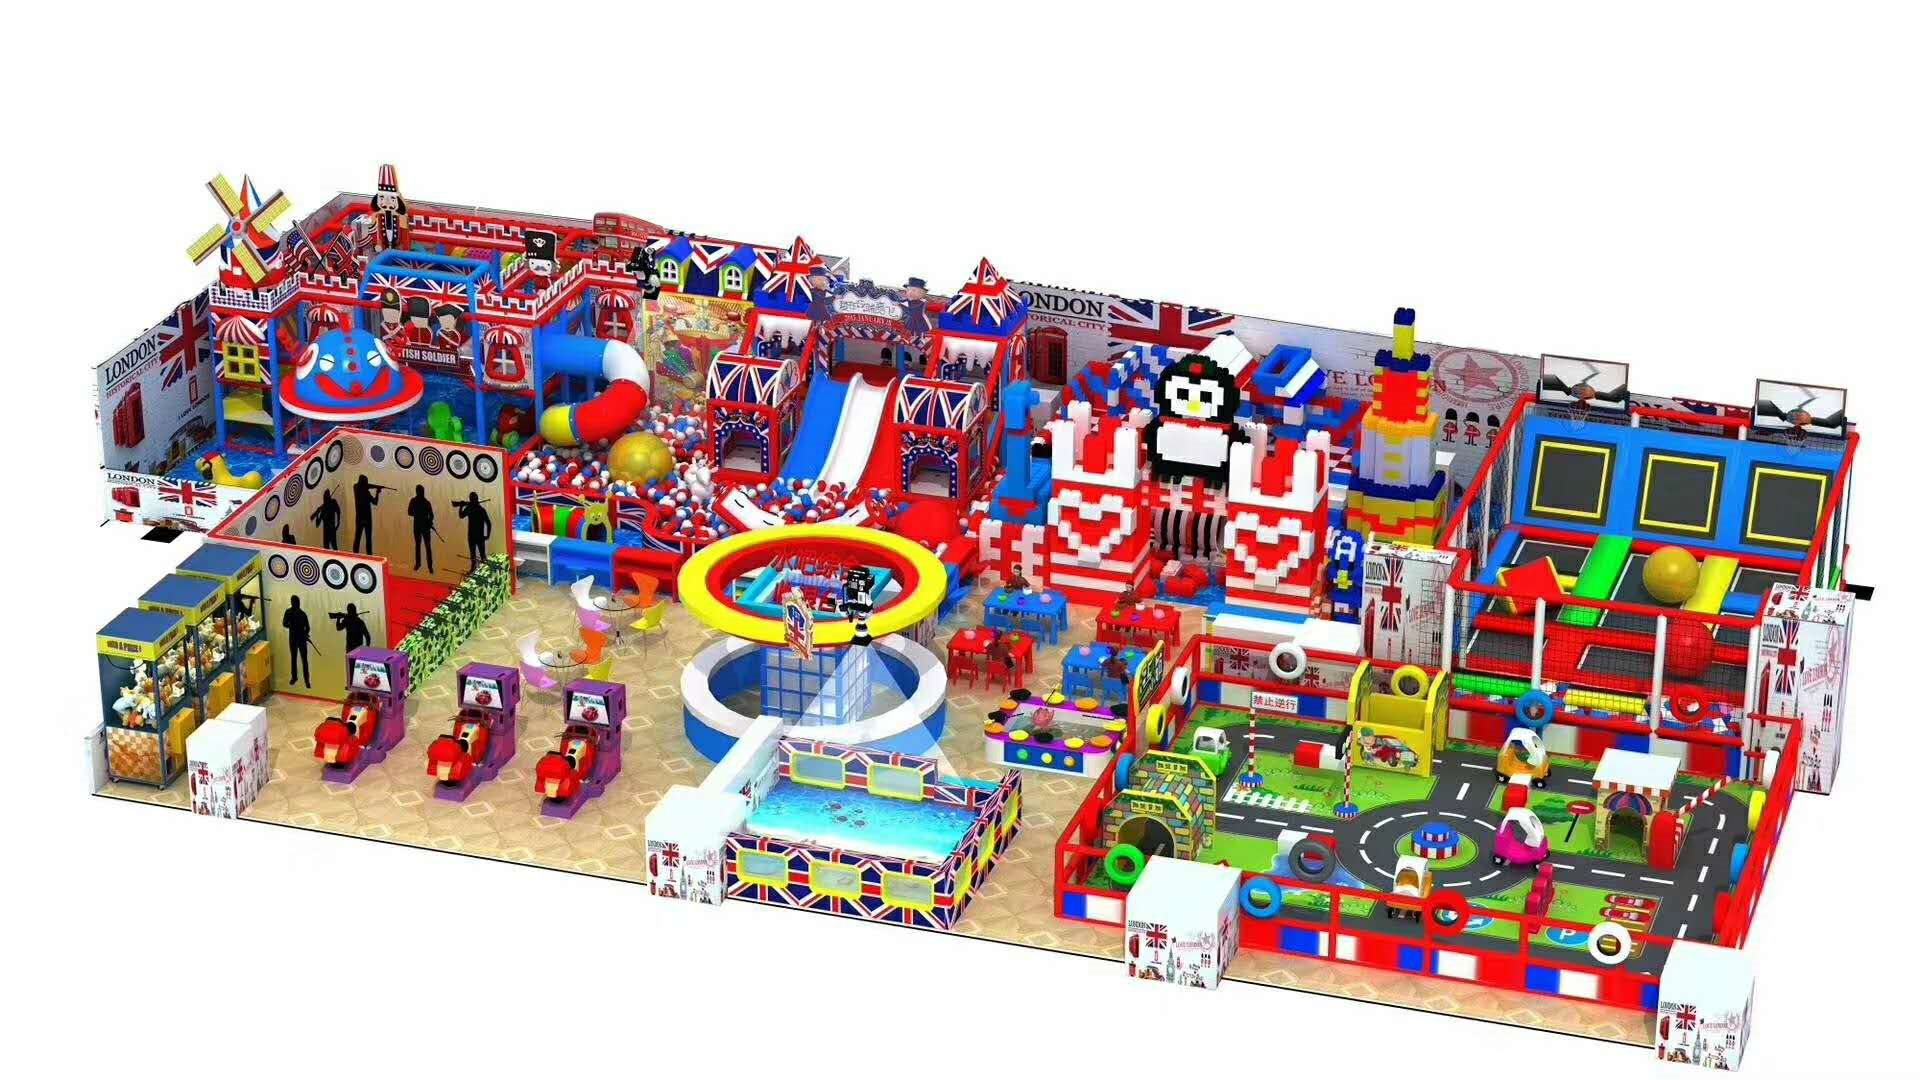 儿童城堡设计 游乐设备供应 儿童玩具制造厂家图片